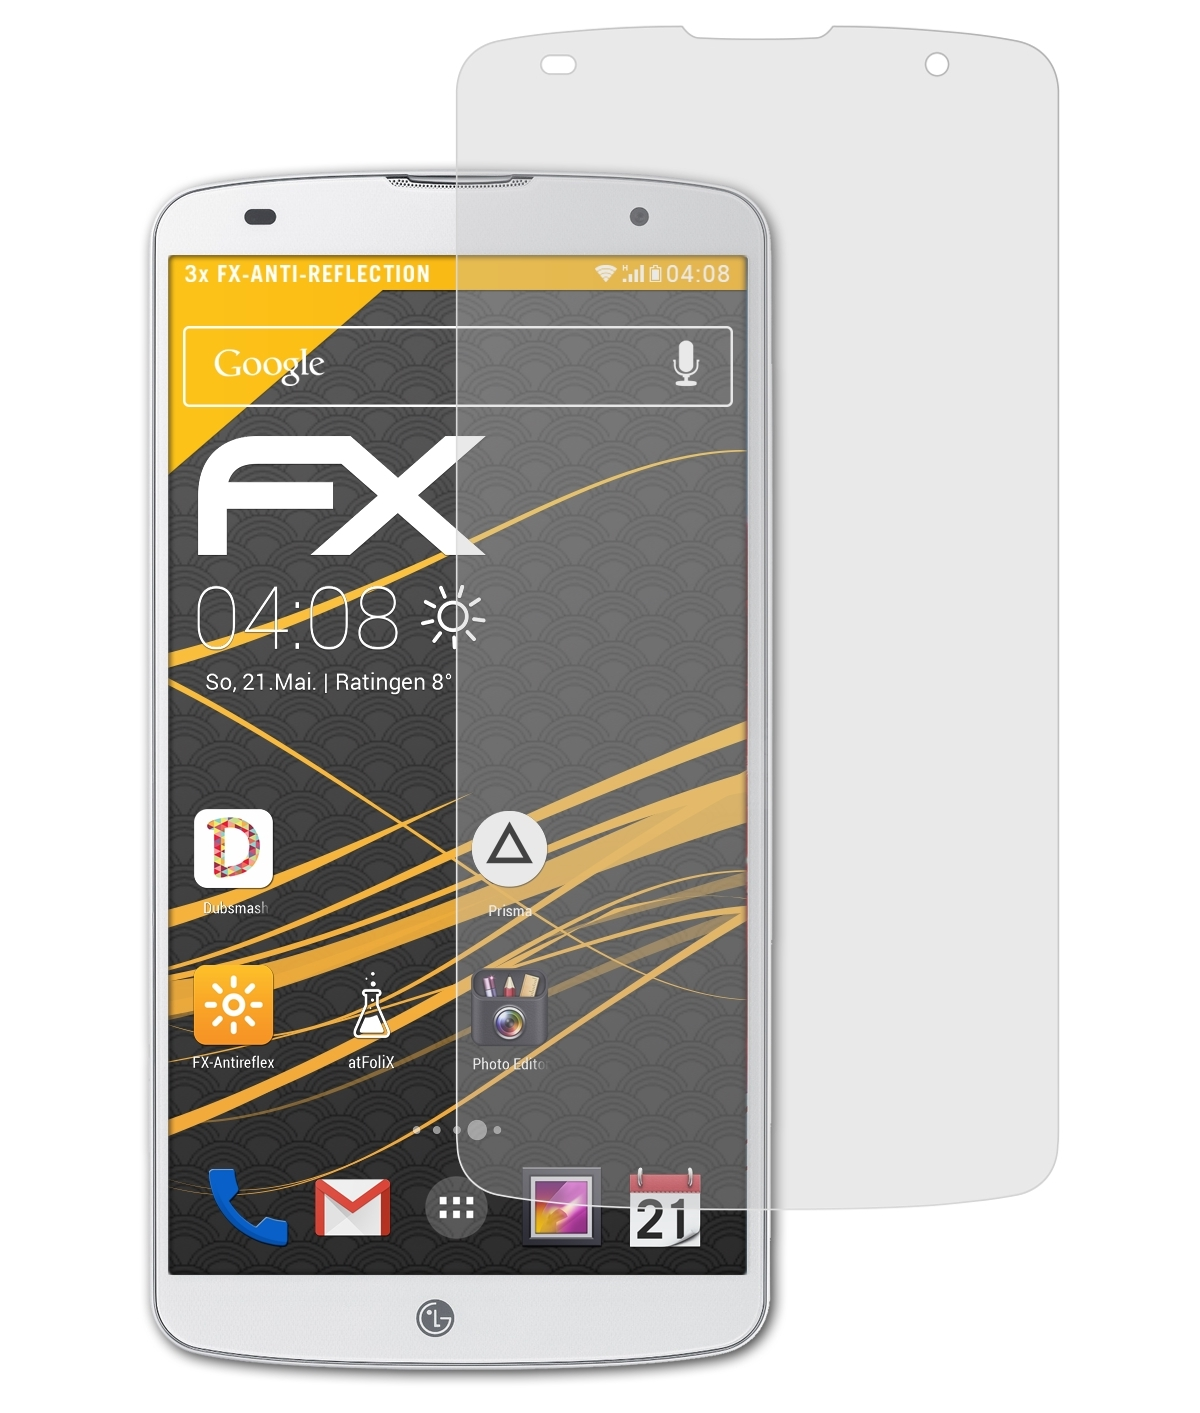 2) G LG ATFOLIX FX-Antireflex Displayschutz(für 3x Pro